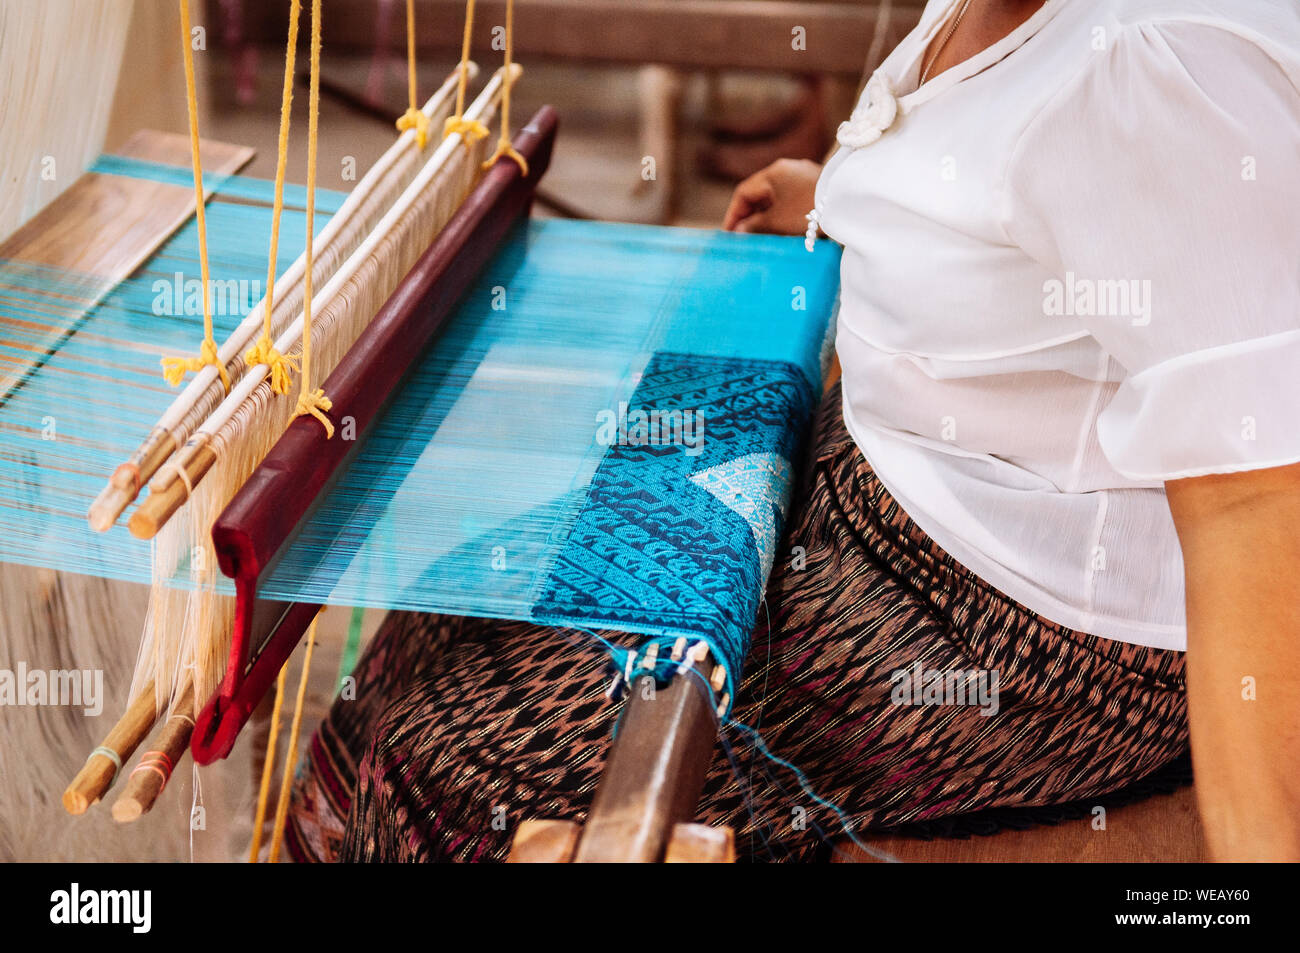 Femme Asiatique travaillant sur métier à tisser en bois vintage avec des fibres de soie, tissage, travail de l'artisanat de l'outil. Concept du tourisme culturel Banque D'Images